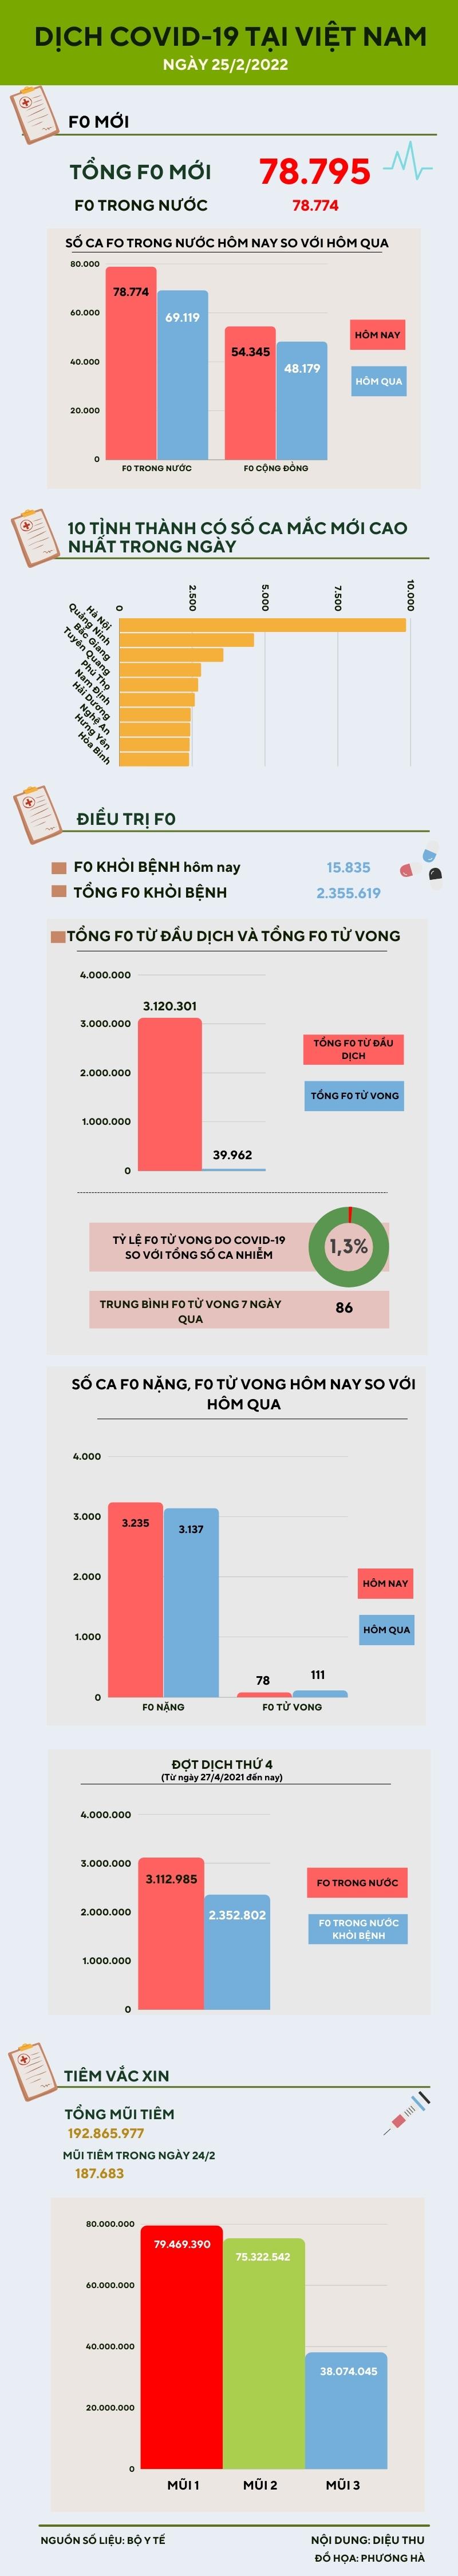 Thêm 78.774 ca COVID-19 trong nước, riêng Hà Nội có 9.836 ca - 1